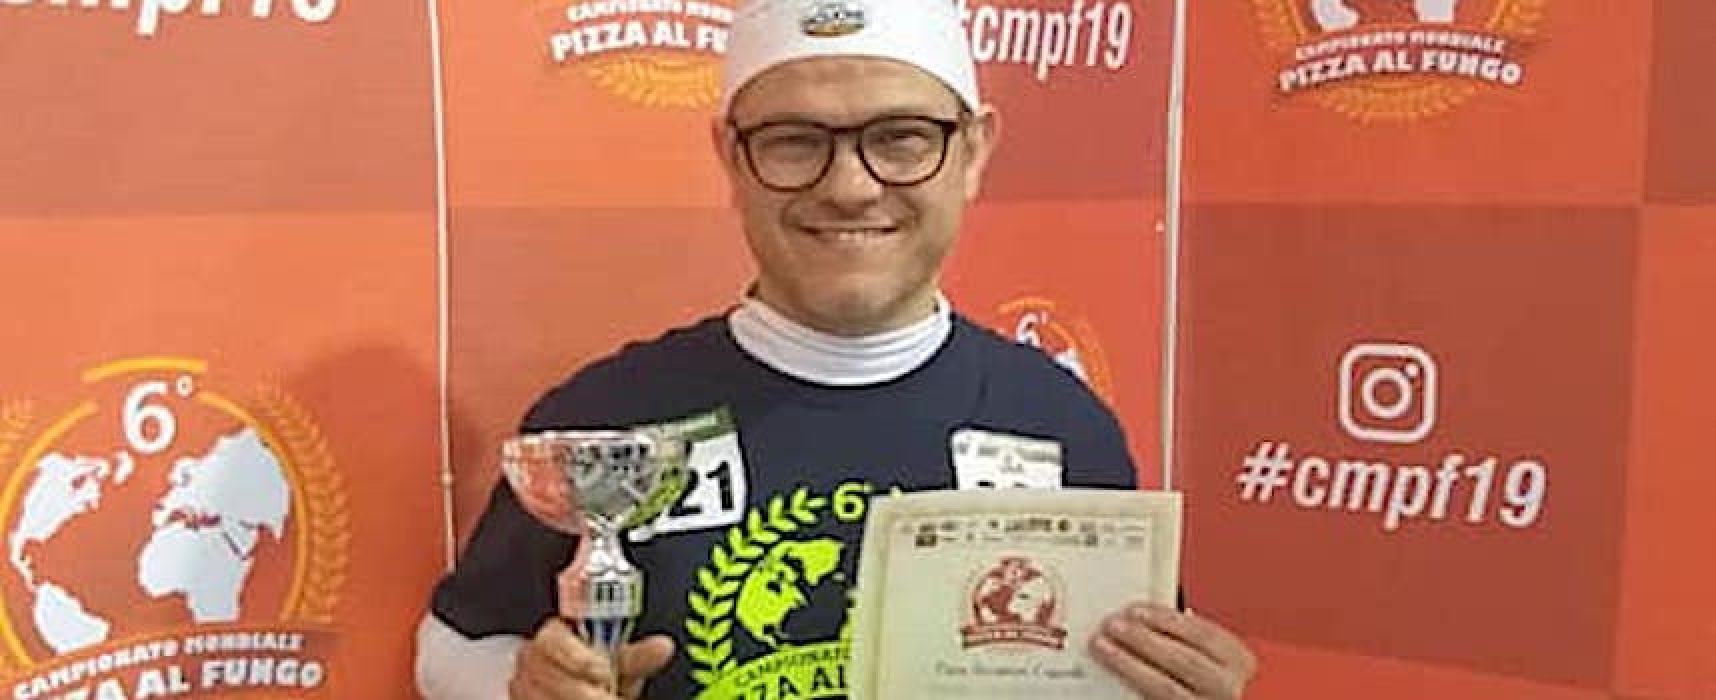 Riconoscimento per il pizzaiolo biscegliese Angelo Di Molfetta a Gravina di Puglia